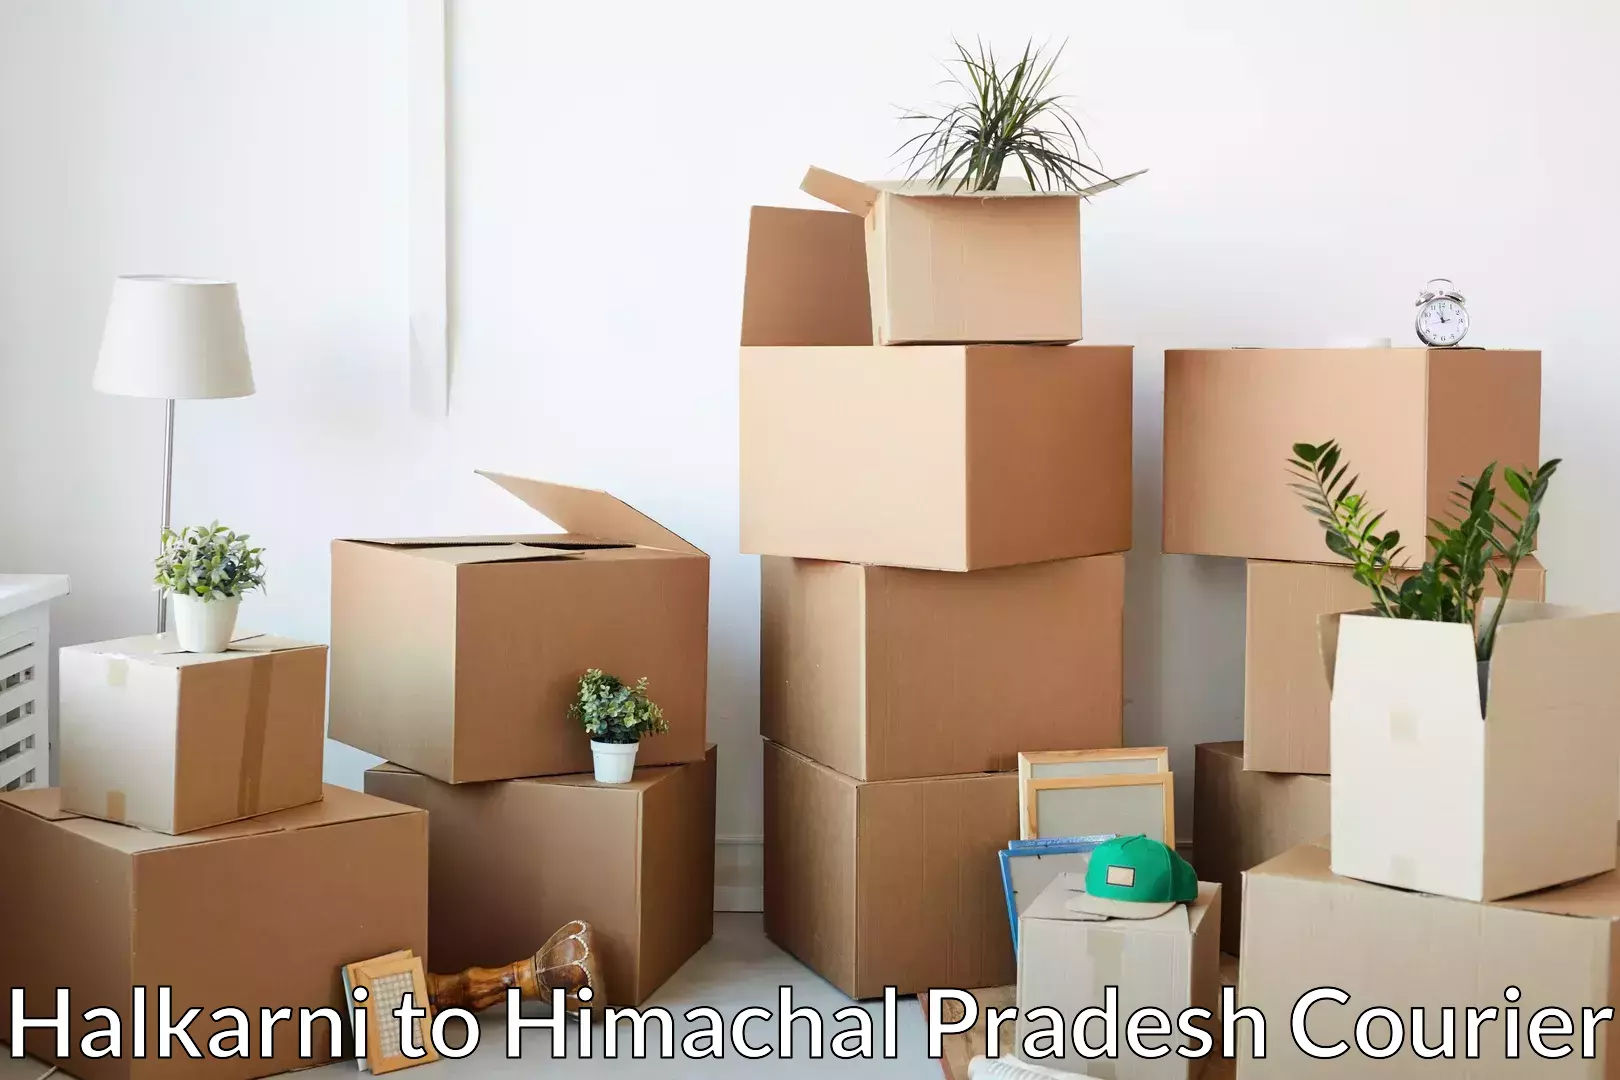 Professional furniture movers Halkarni to Una Himachal Pradesh